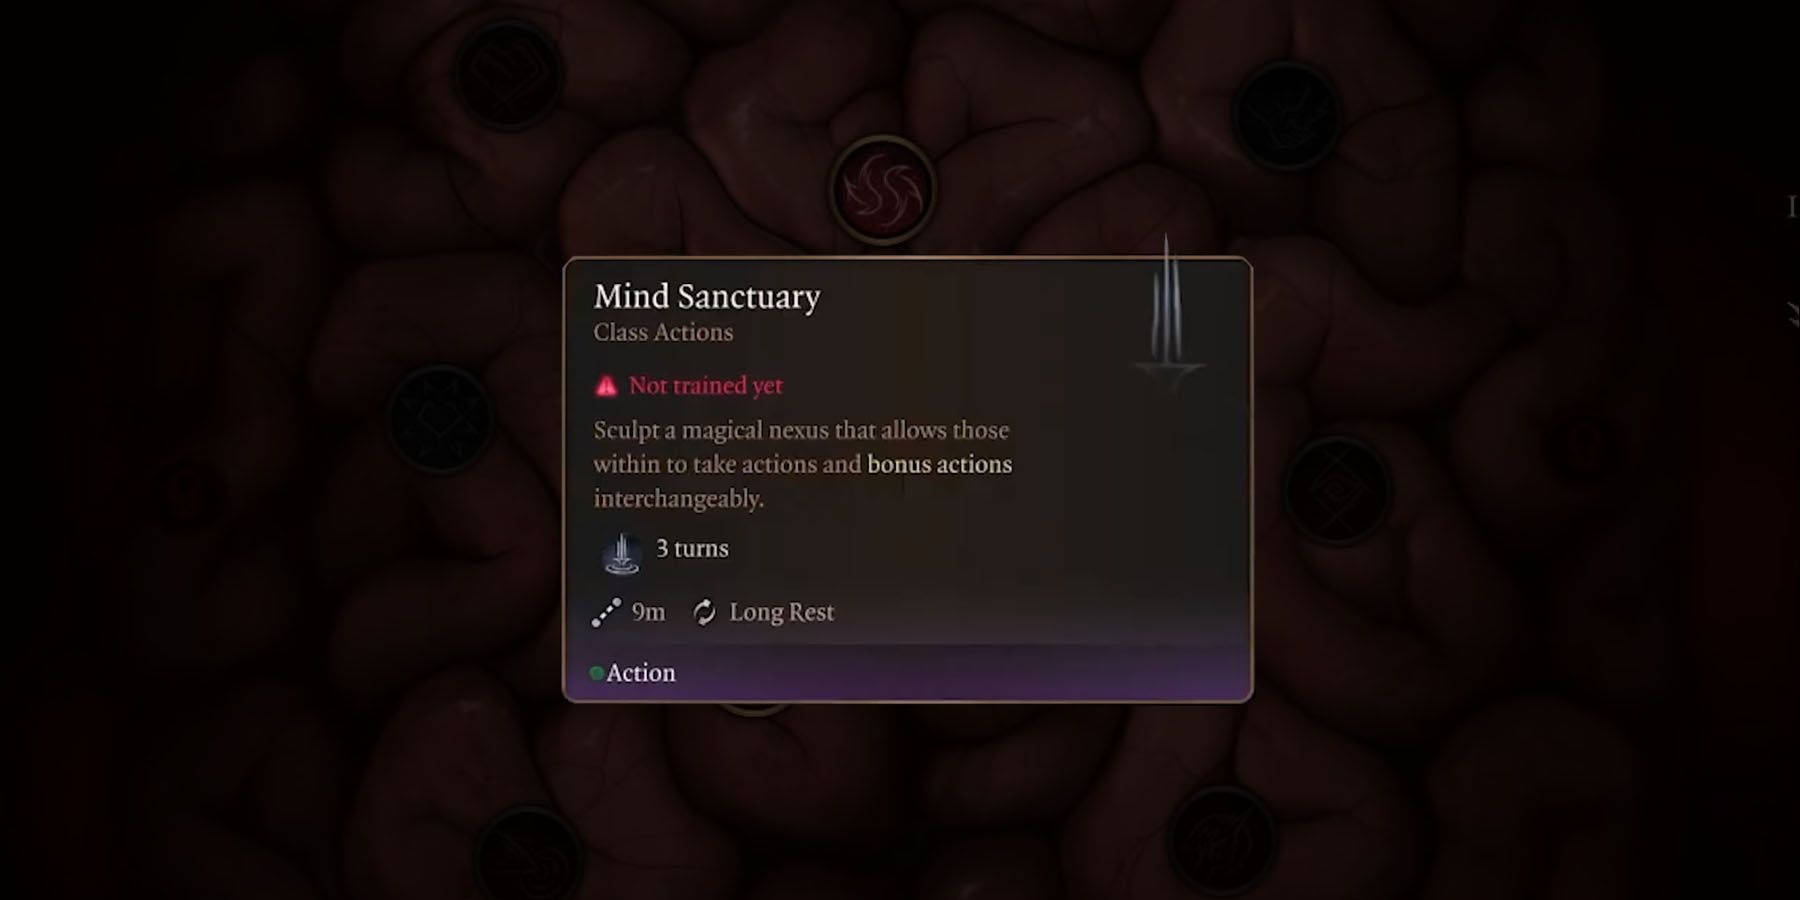 Mind Sanctuary